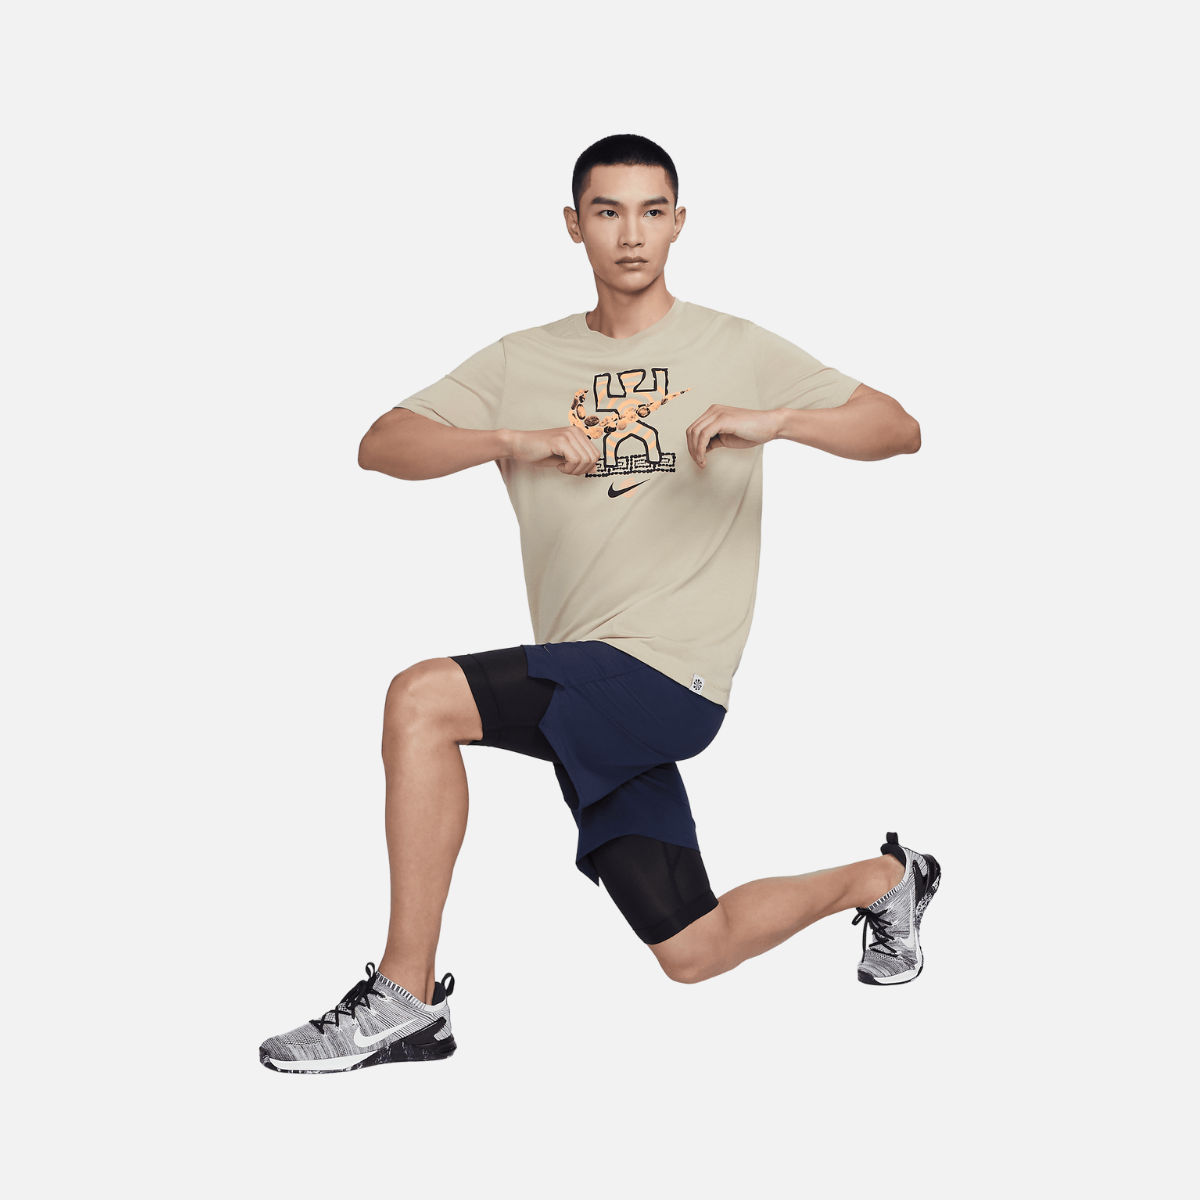 Nike Dri-FIT Form Men's 18cm (approx.) Unlined Versatile Shorts